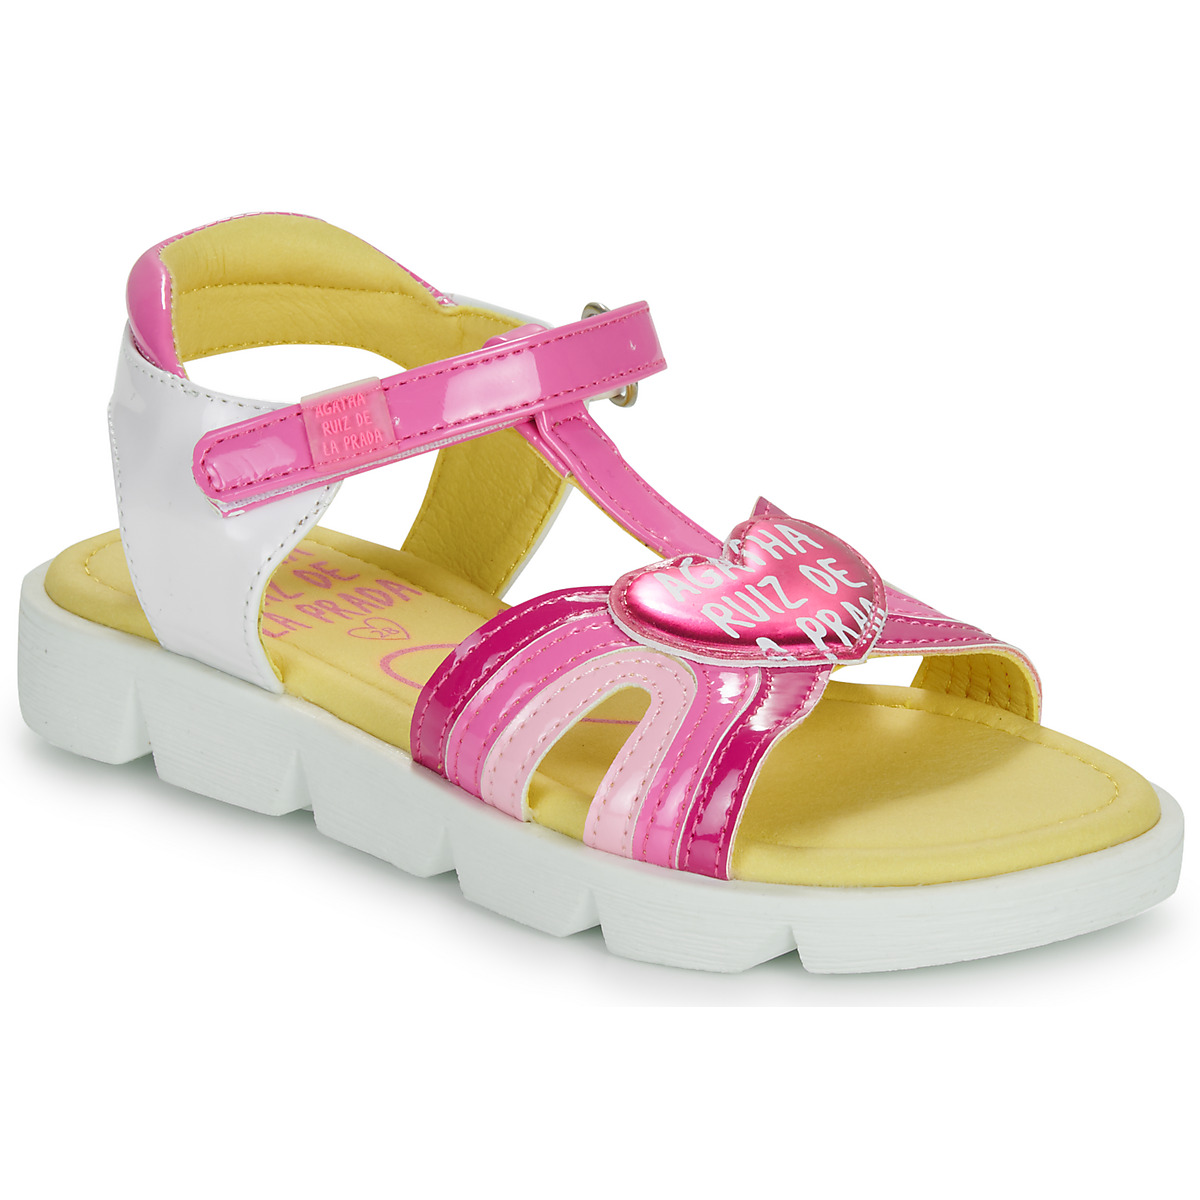 Schuhe Mädchen Sandalen / Sandaletten Agatha Ruiz de la Prada SANDALIA CORAZON Weiß